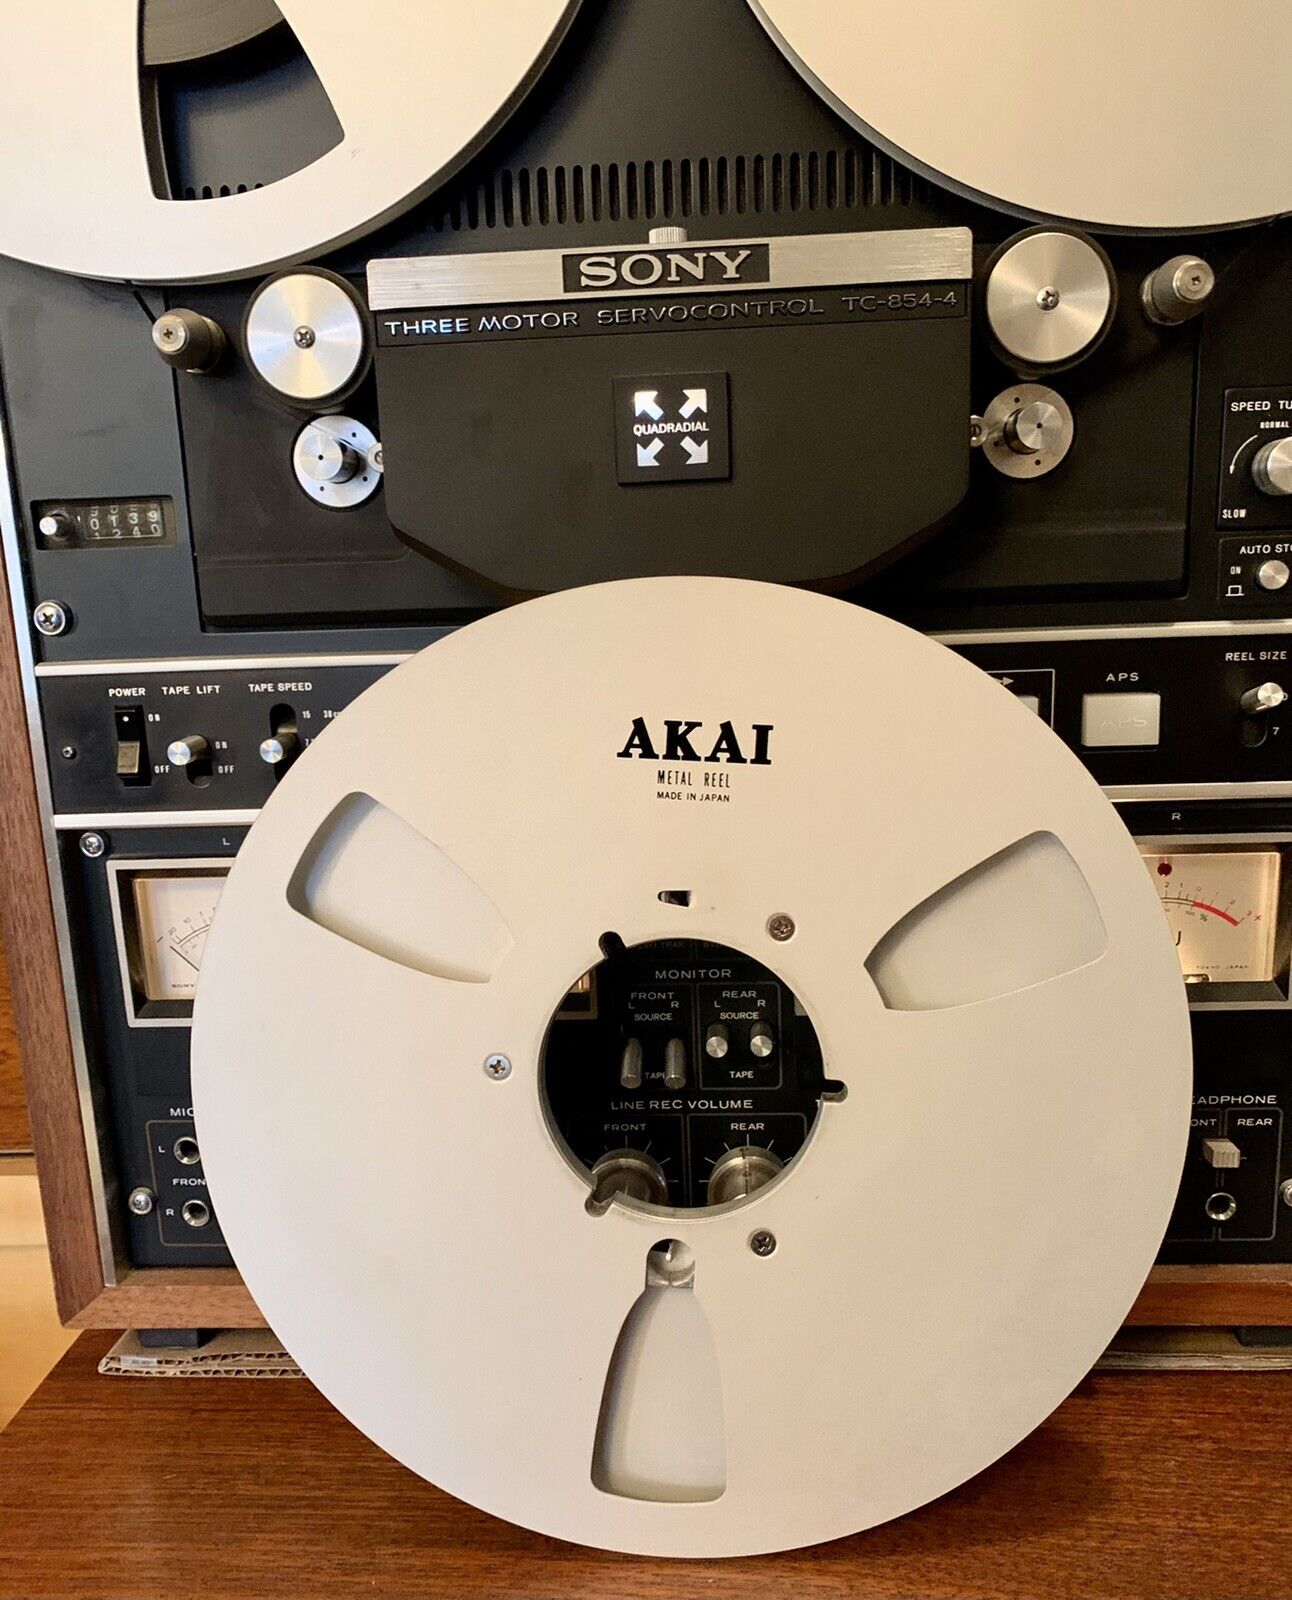 AKAI Metal Reel Cash special price 10.5” Take Up R-10M 4” 1 Tape for No Damage free shipping